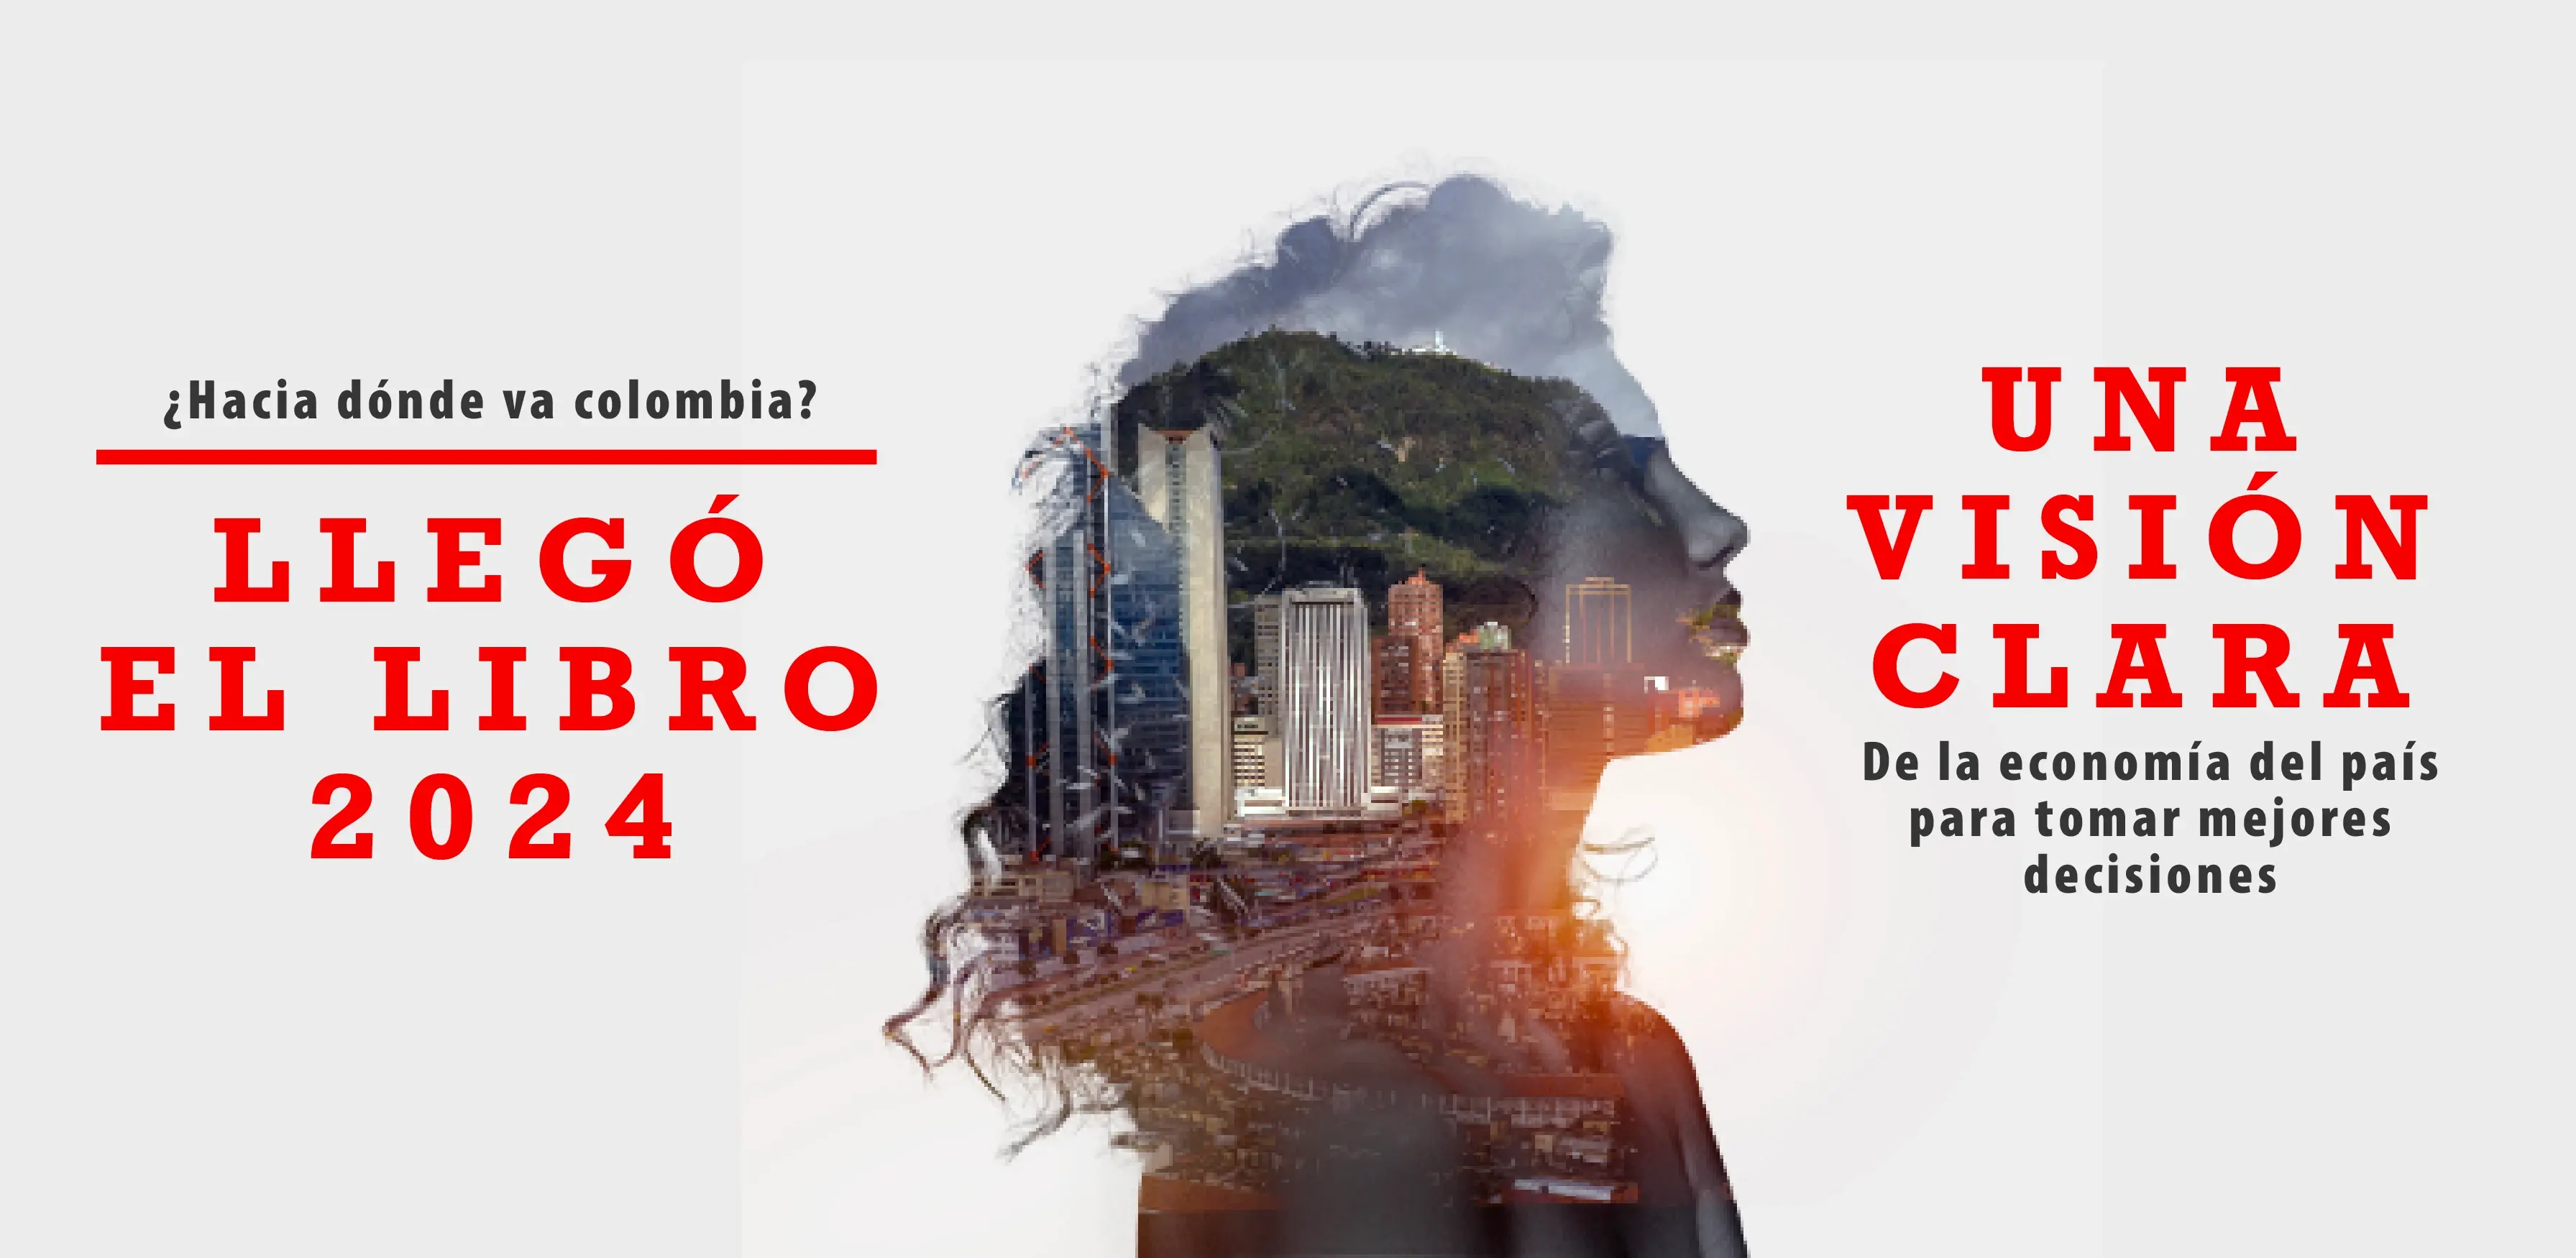 Silueta del rostro de una mujer con la ciudad de Bogotá en su interior, la cual representa una visión a la economía del país